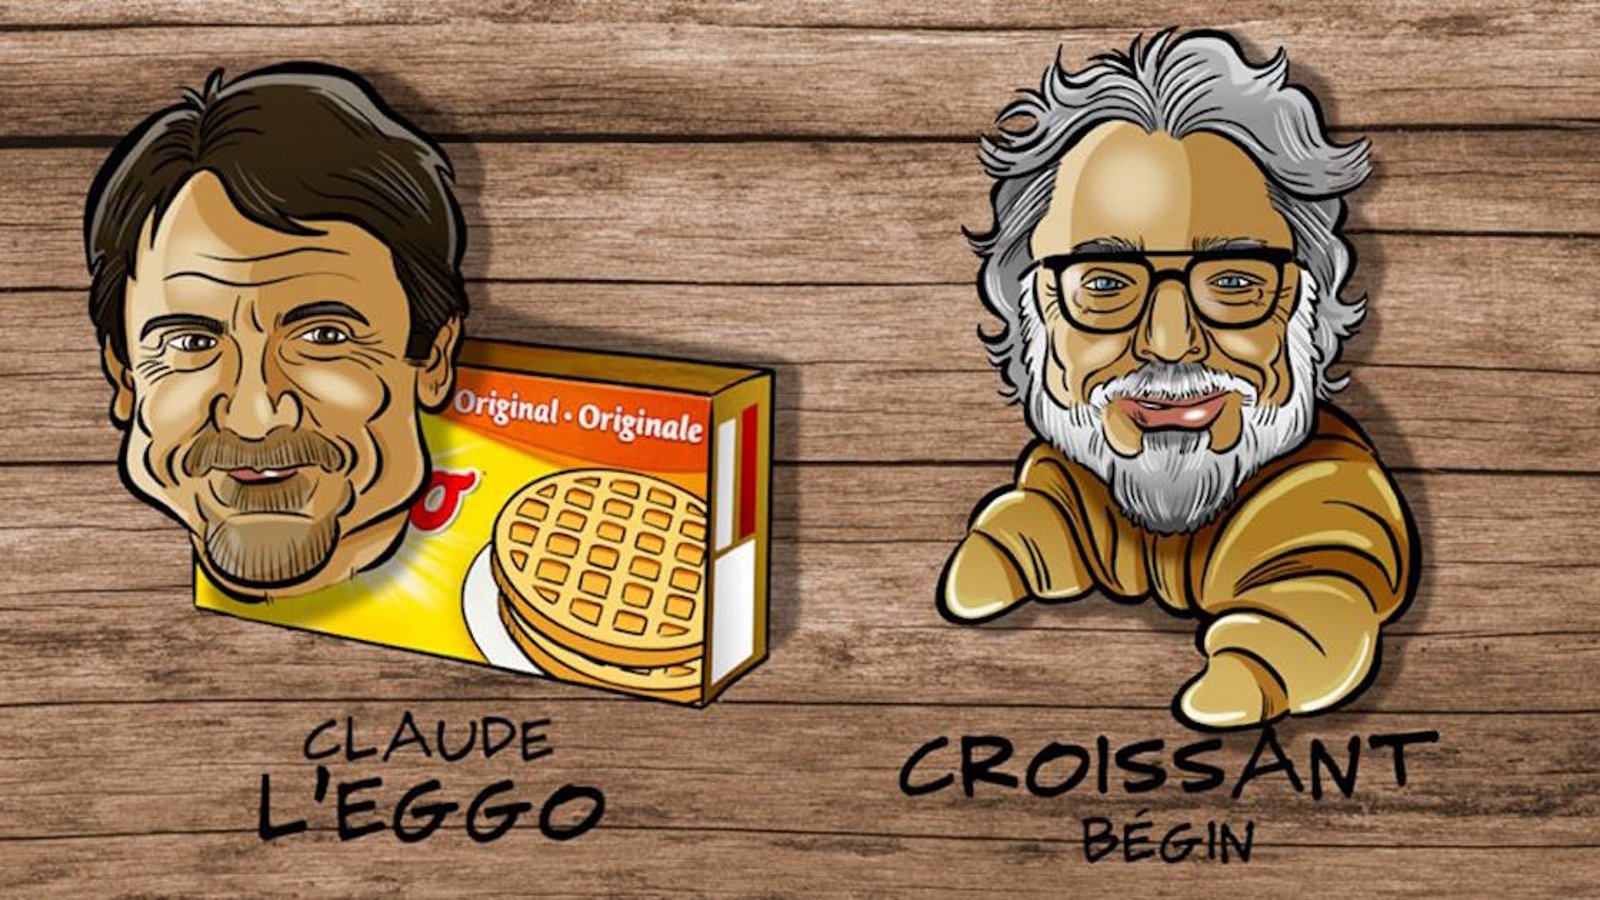 Des chandails humoristiques mettant en vedette des artistes québécois pour promouvoir l’alimentation locale